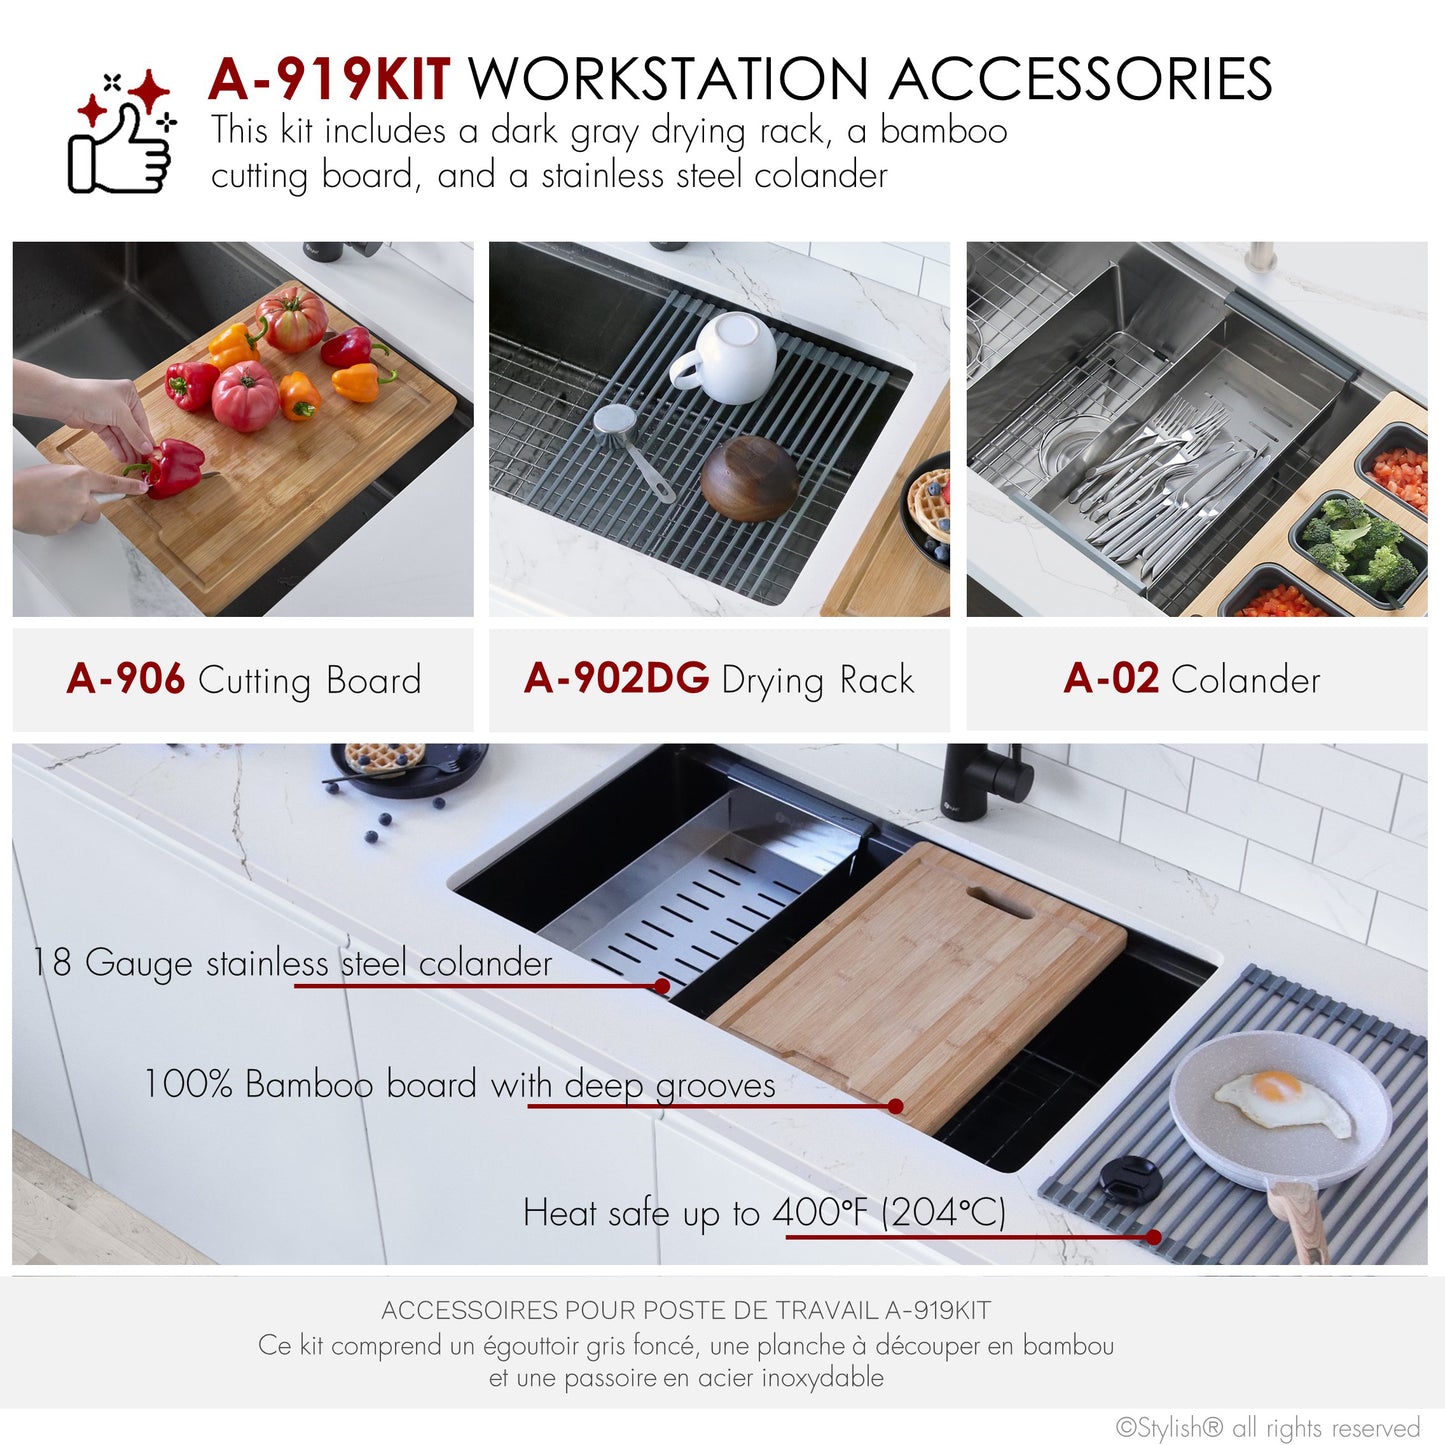 Stylish Accessories Kit A-919KIT